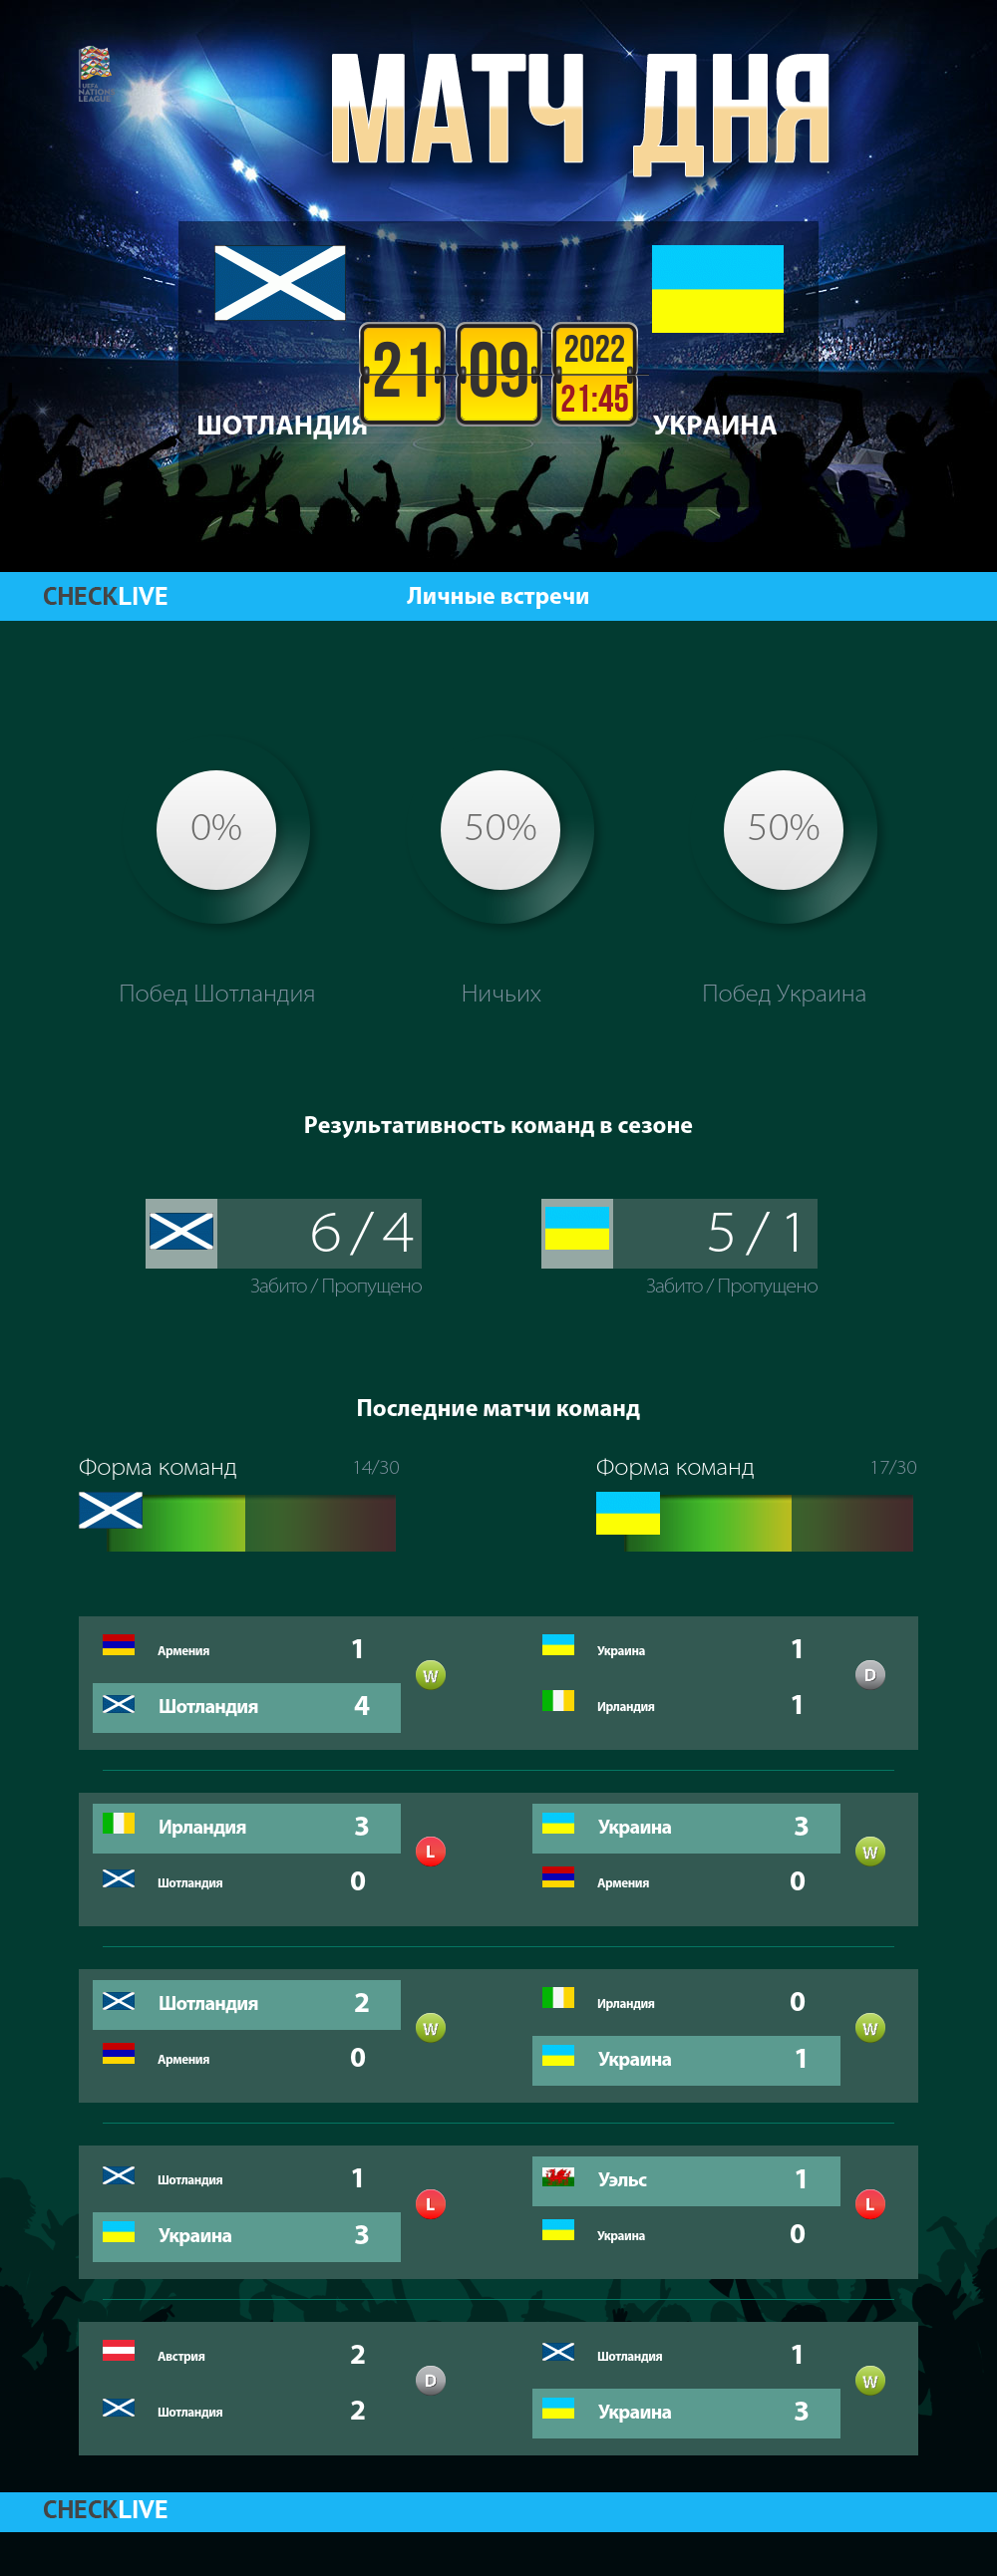 Инфографика Шотландия и Украина матч дня 21.09.2022